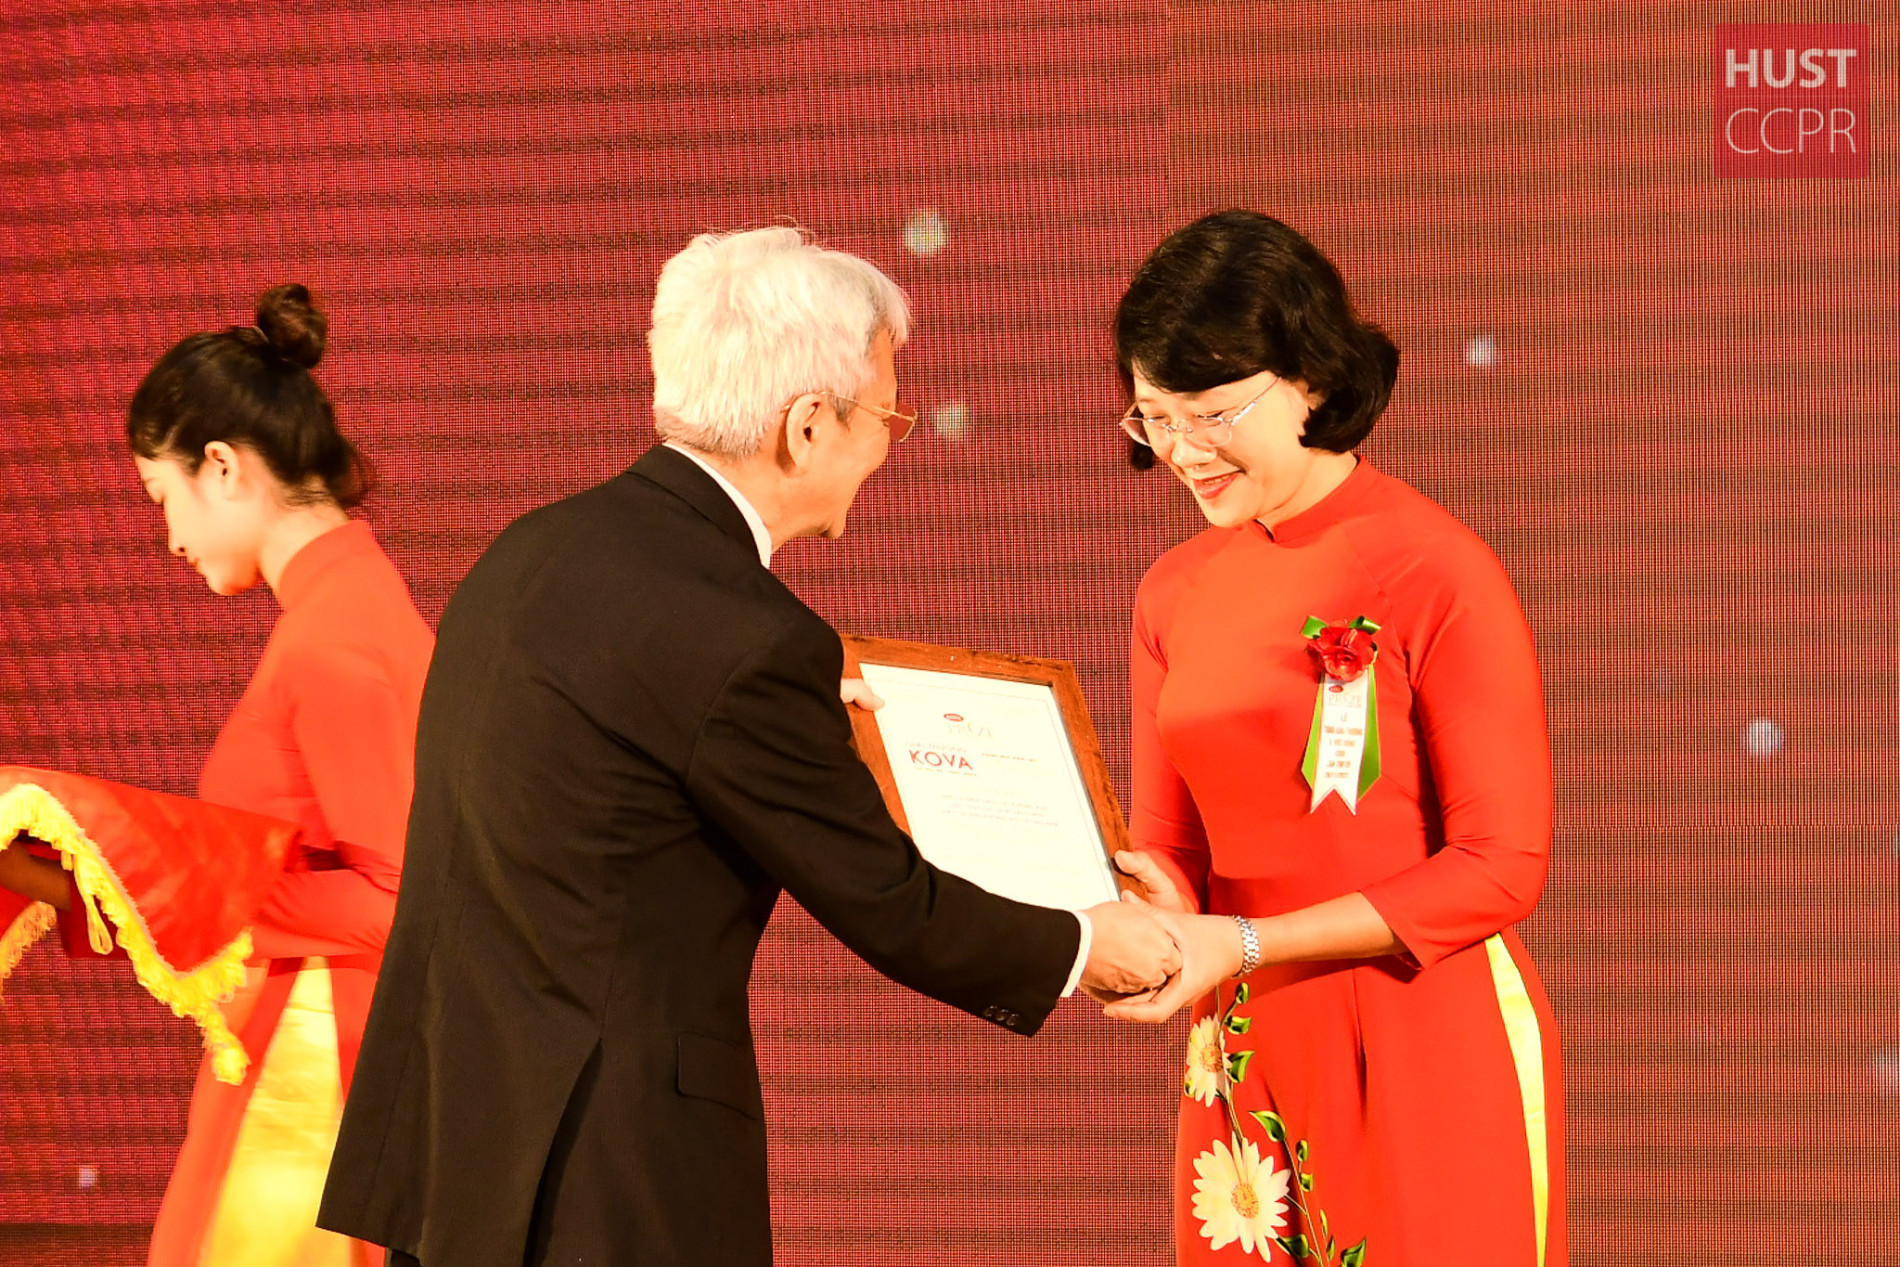 PGS. Đoàn Thị Thái Yên, Viện Khoa học và Công nghệ Môi trường, Đại học Bách khoa Hà Nội, nhận giải thưởng KOVA ngày 26/11. Ảnh: CCPR